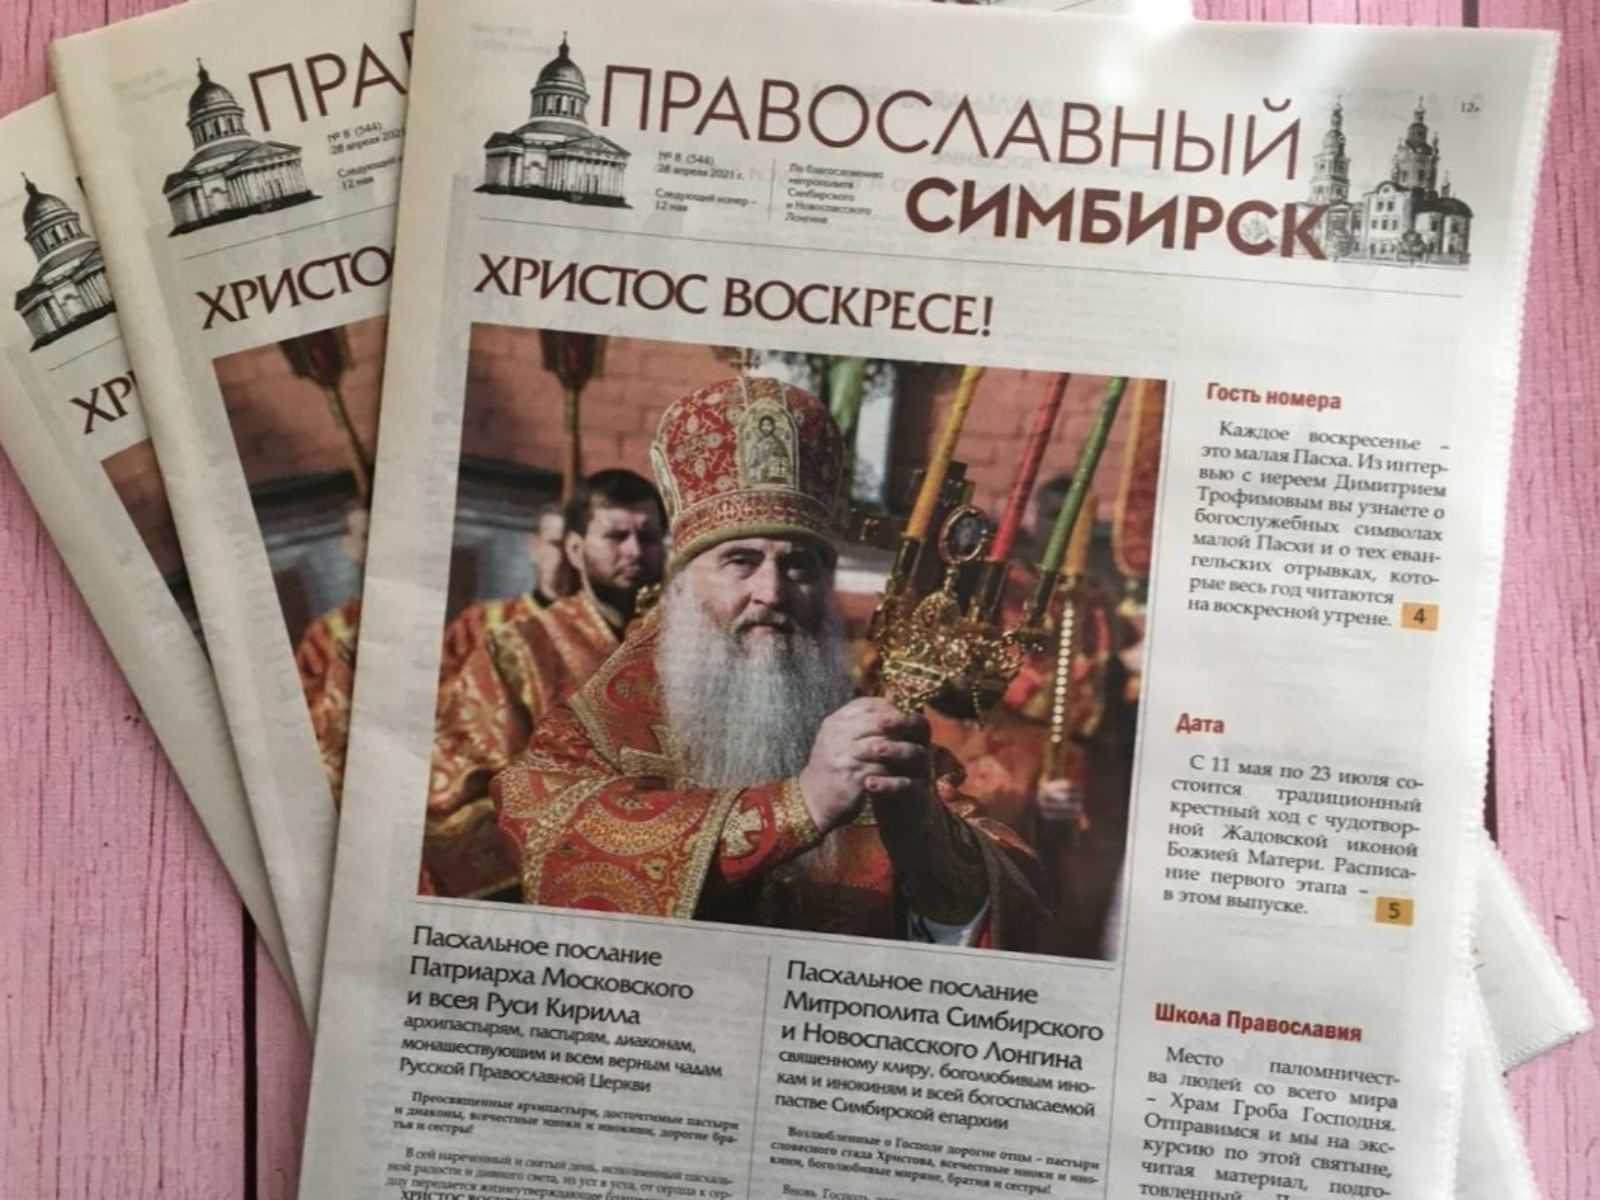 Русские православные издания